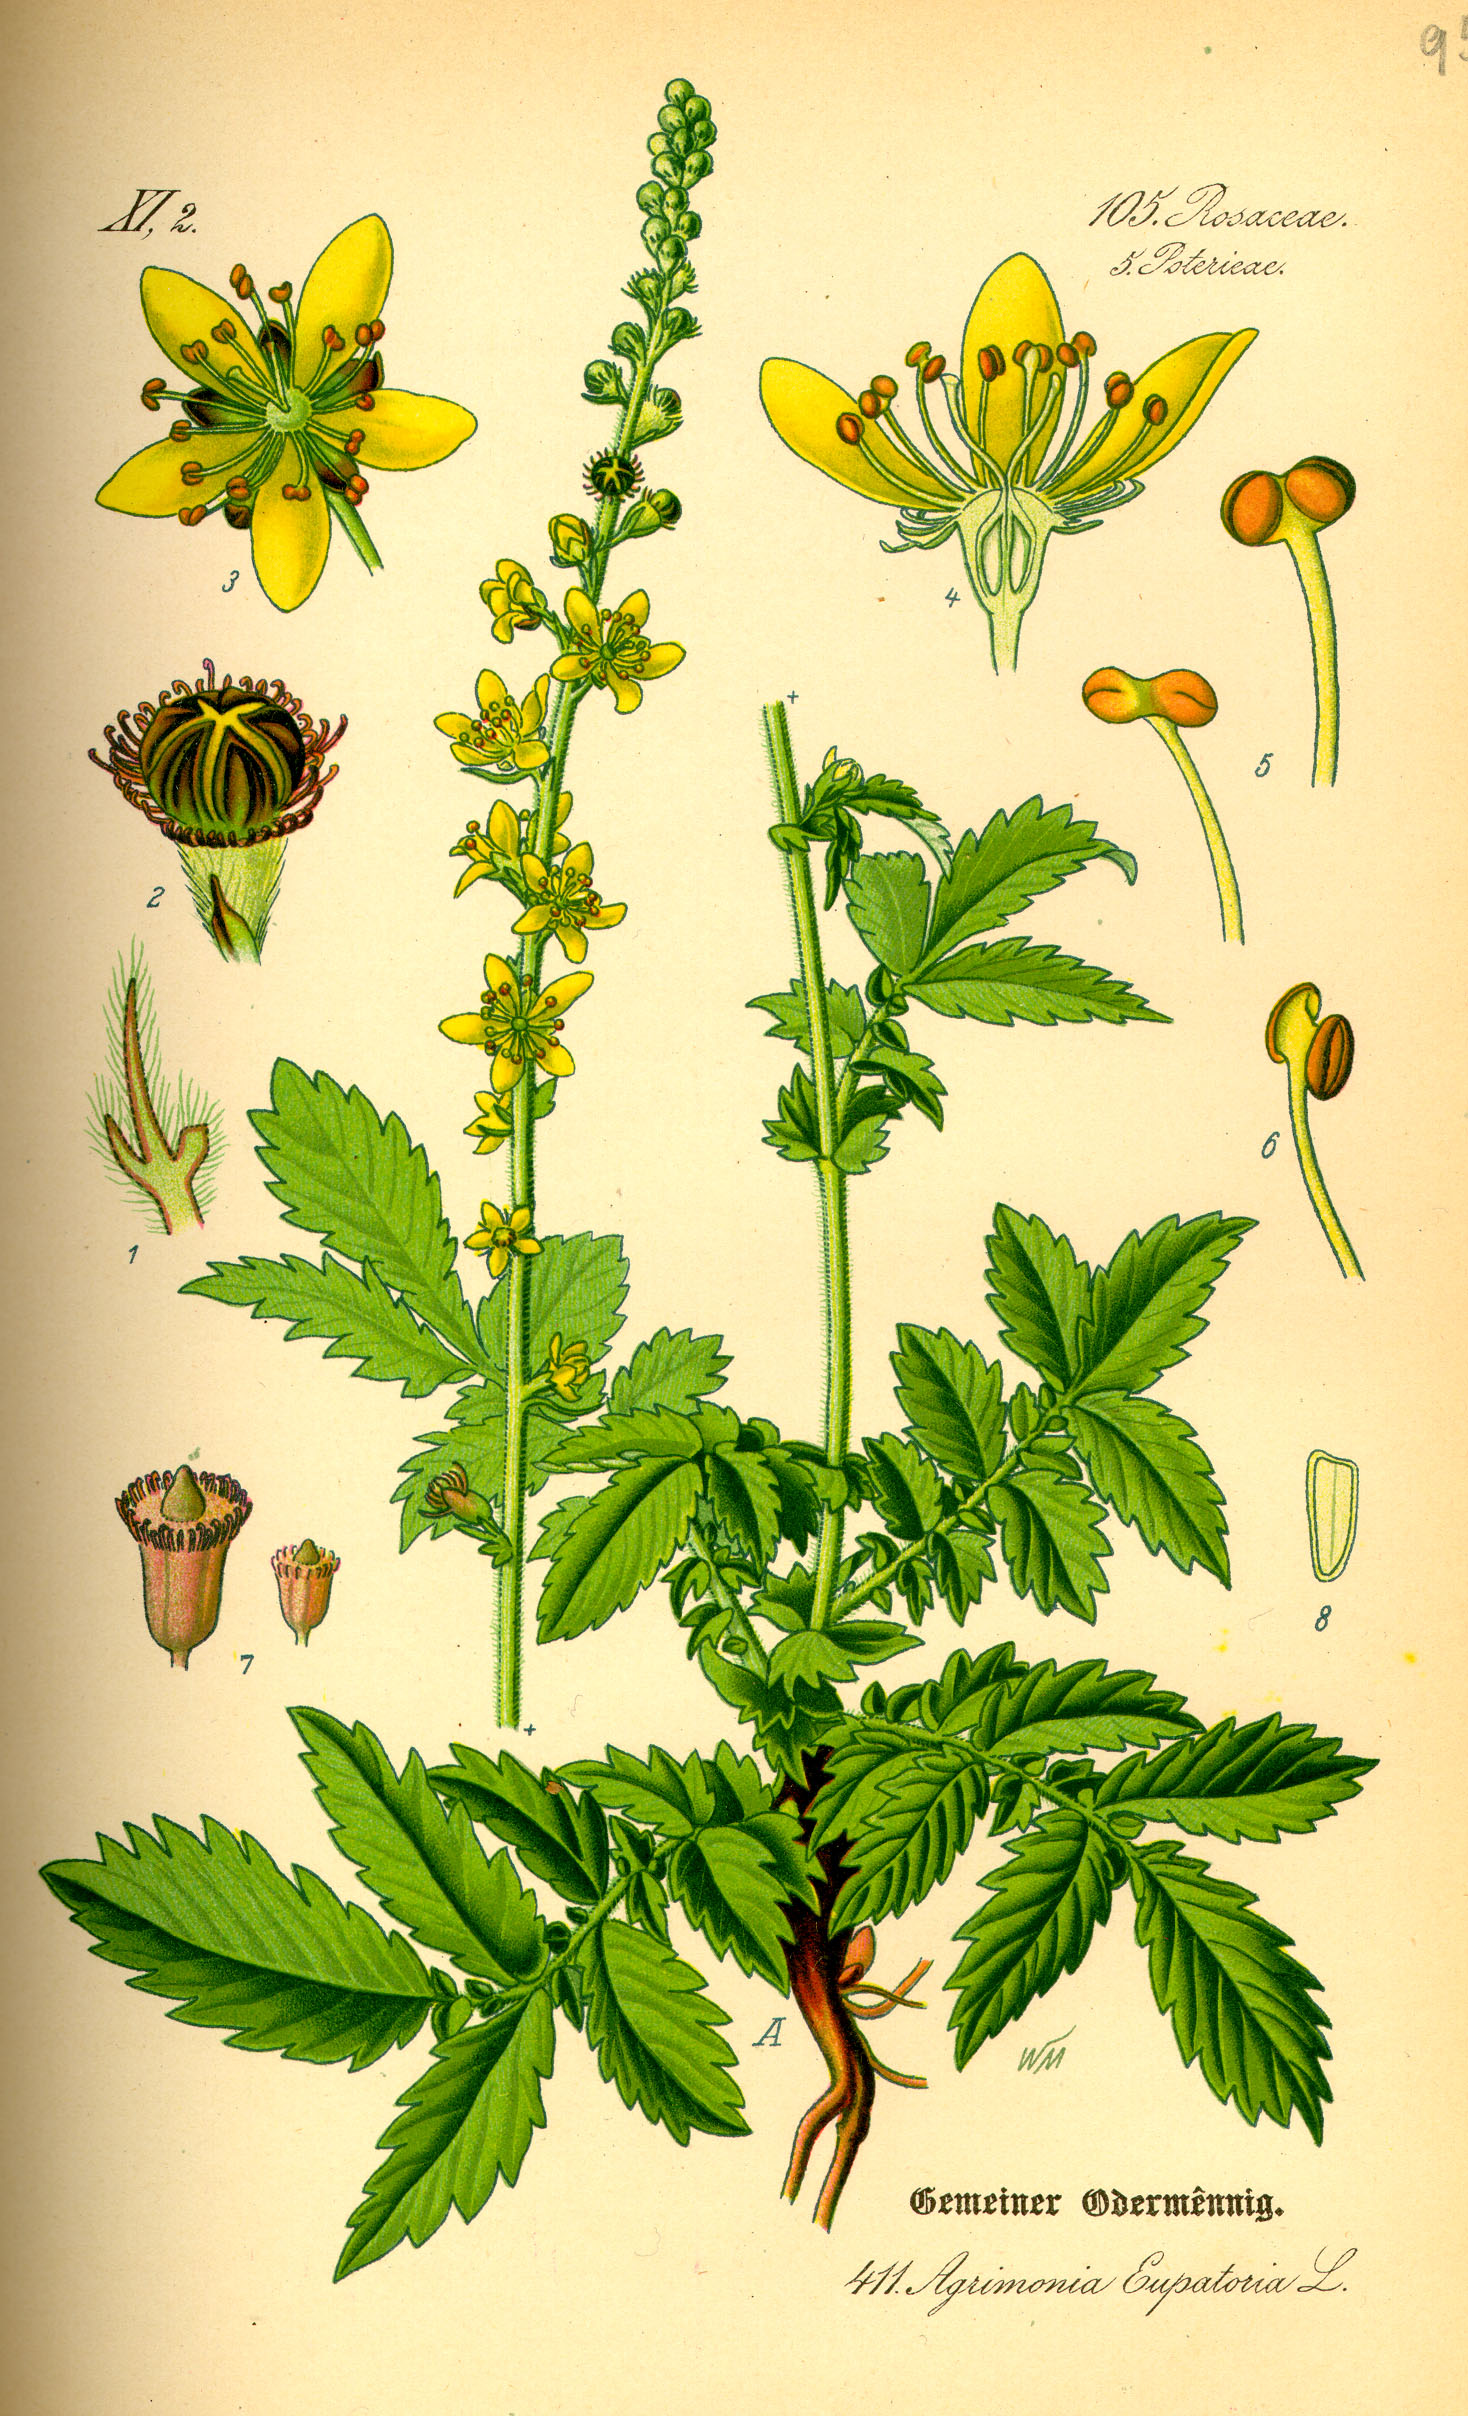 1885 Agrimony (Agrimonia eupatoria) botanical illustration.